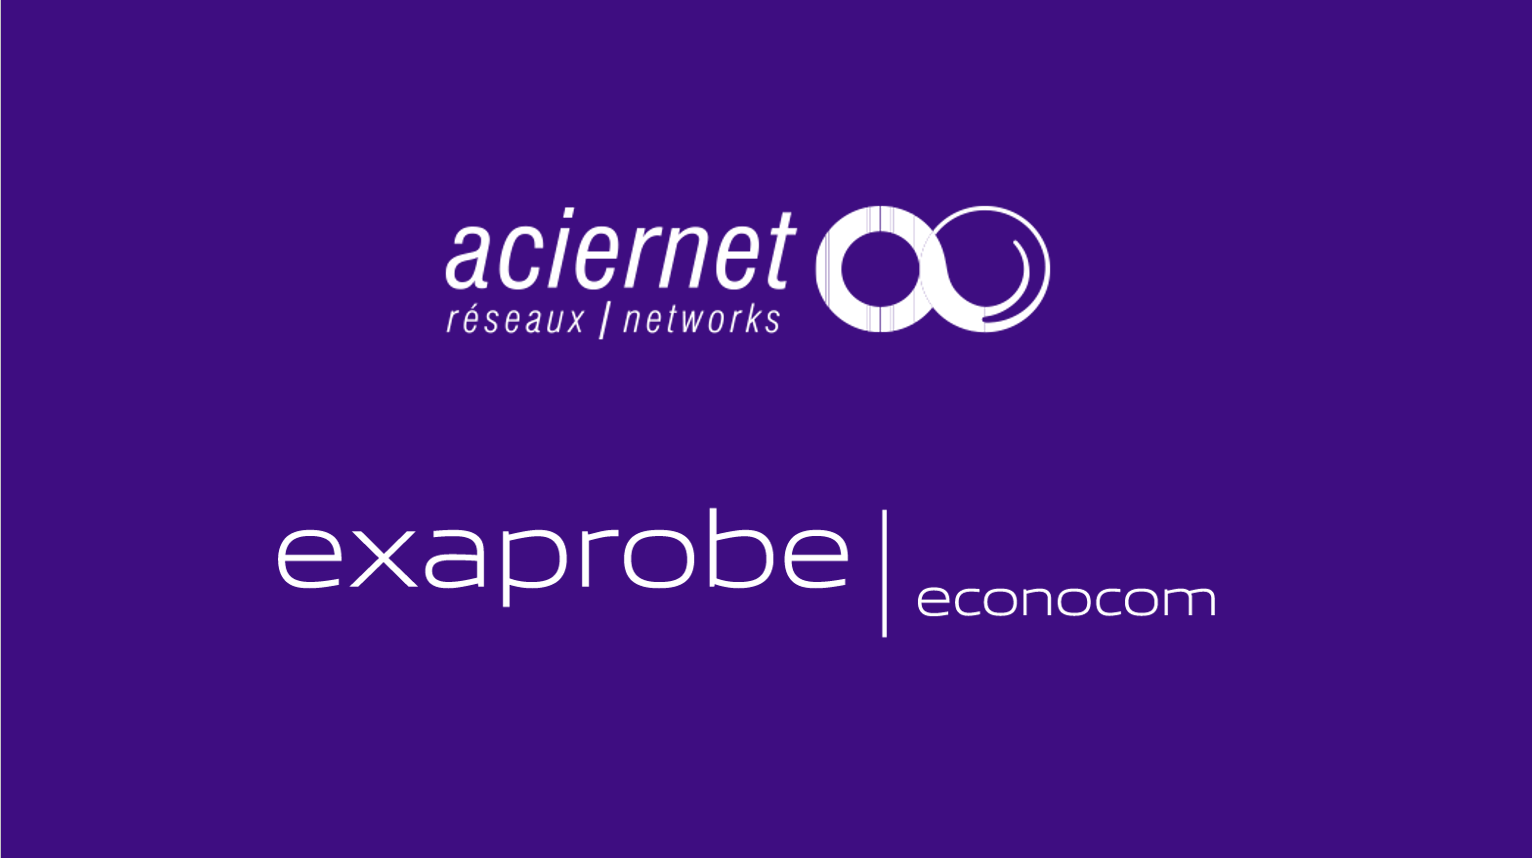 Aciernet-Exaprobe becomes Exaprobe